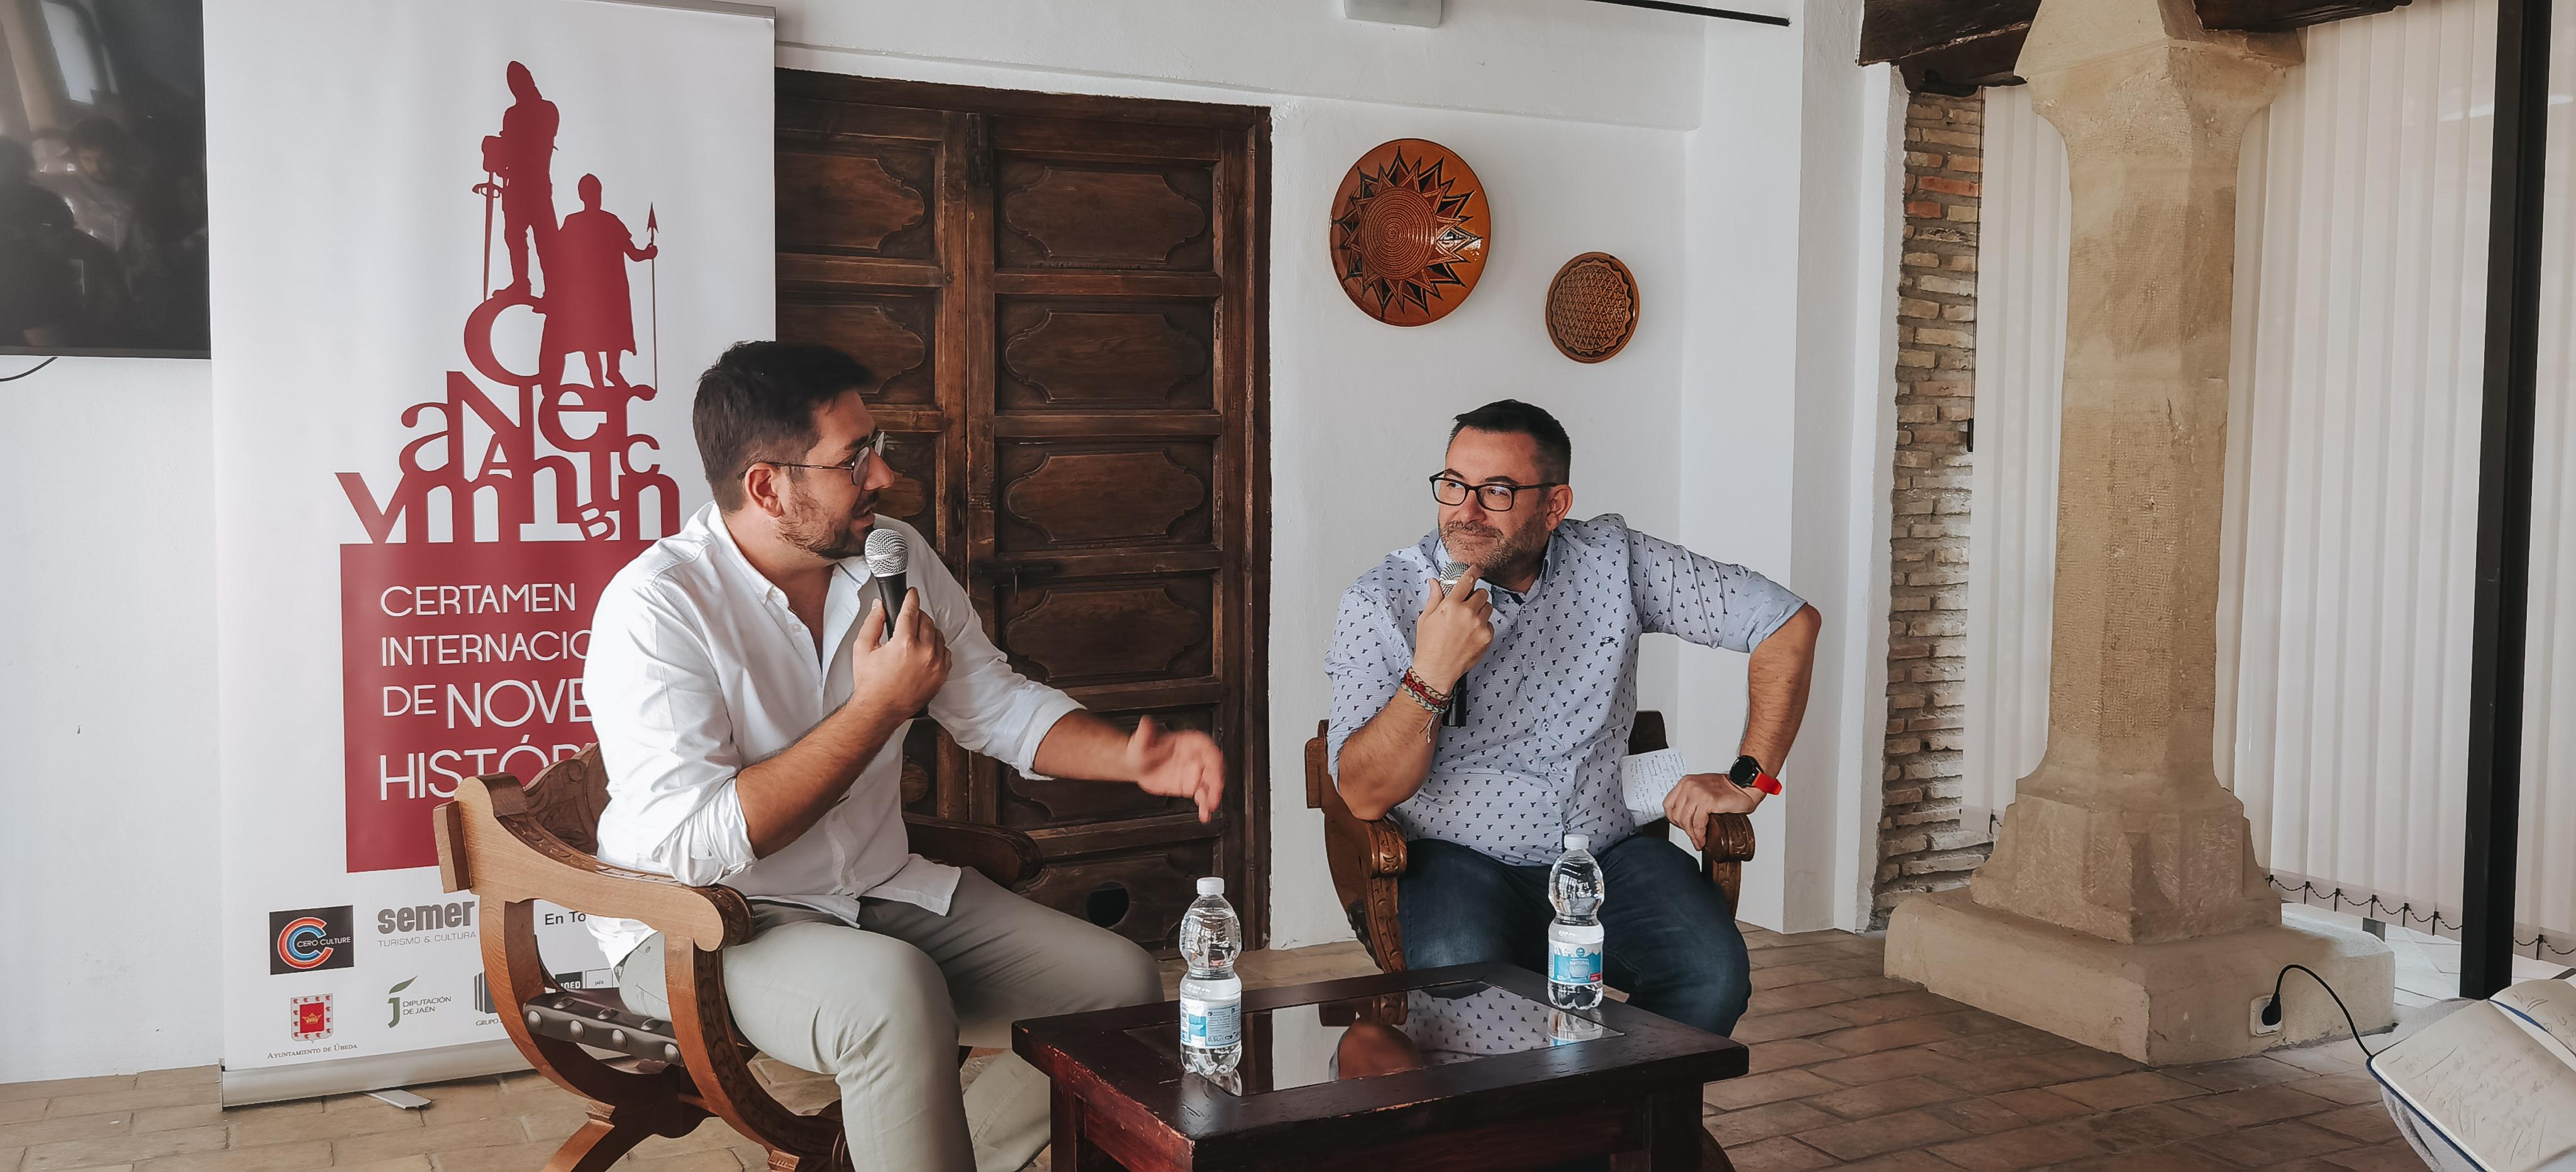 Alan Pitronello y Fernando en el certamen de novela historica de ubeda 2022